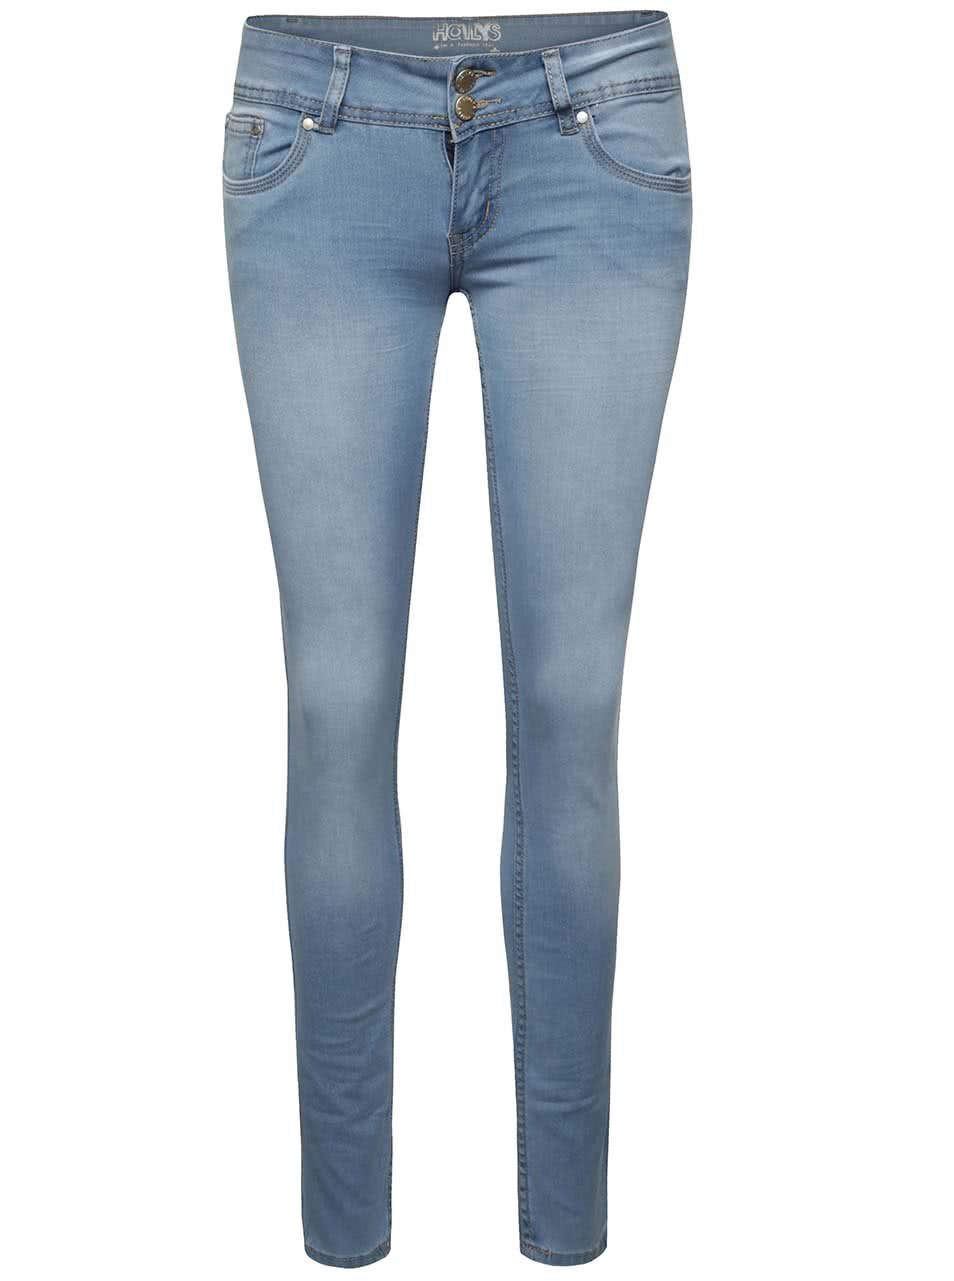 Modré džíny s nízkým pasem Haily´s Kitty